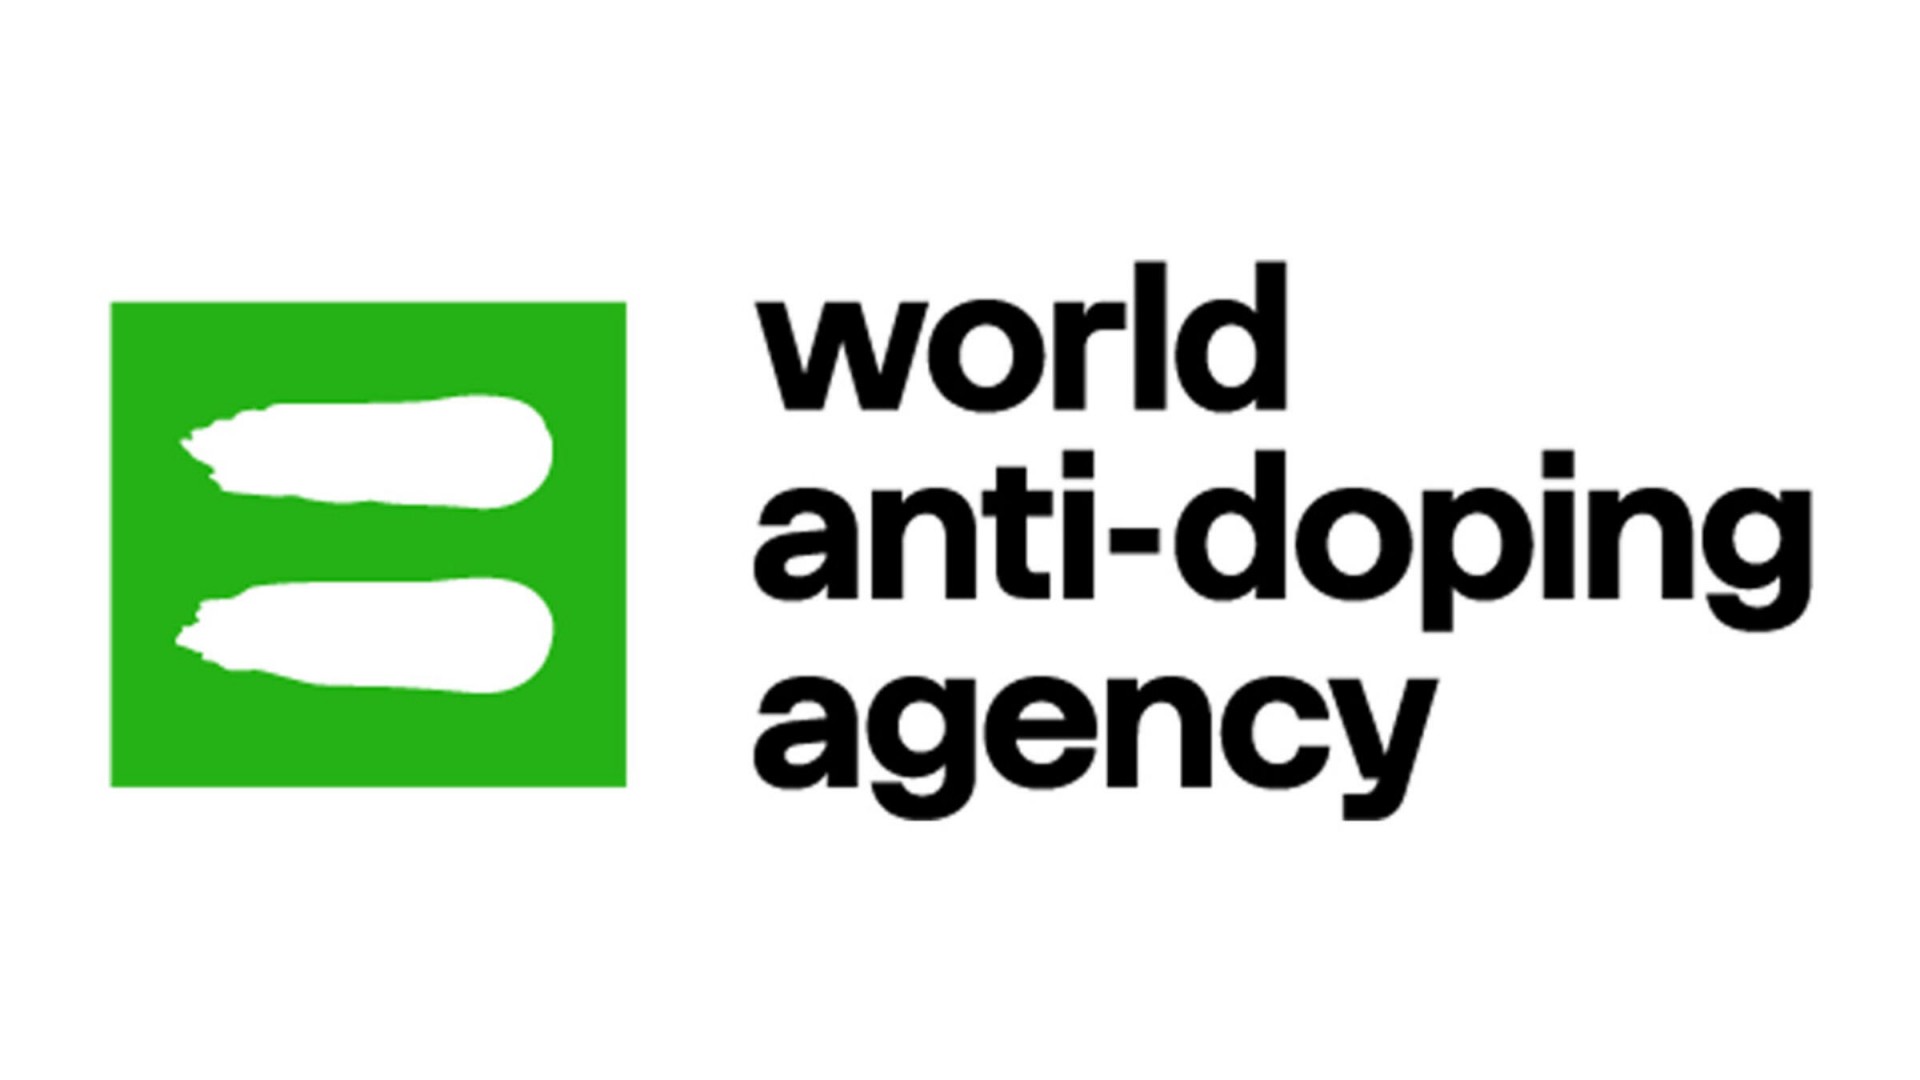 Lista më e re me substancat e ndaluara nga Agjencia Botërore e Antidopingut